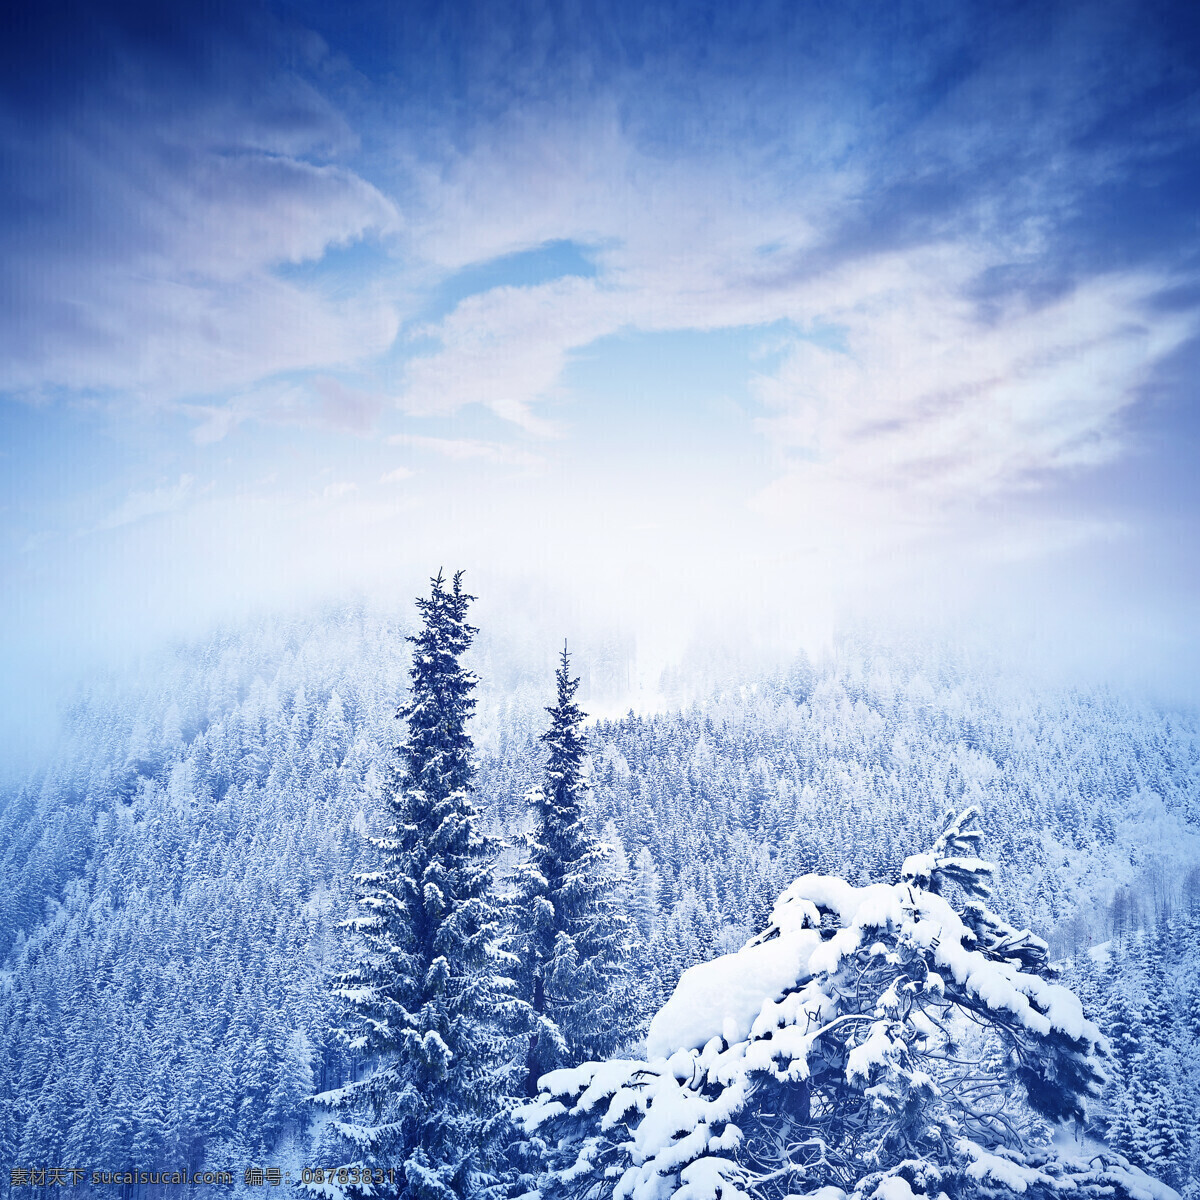 冬天雪松背景 冬天 冬季 雪松 雪景 白雪 雪松树 树木 积雪 蓝天 白云 冬天背景 图片大全 高清 树木树叶 生物世界